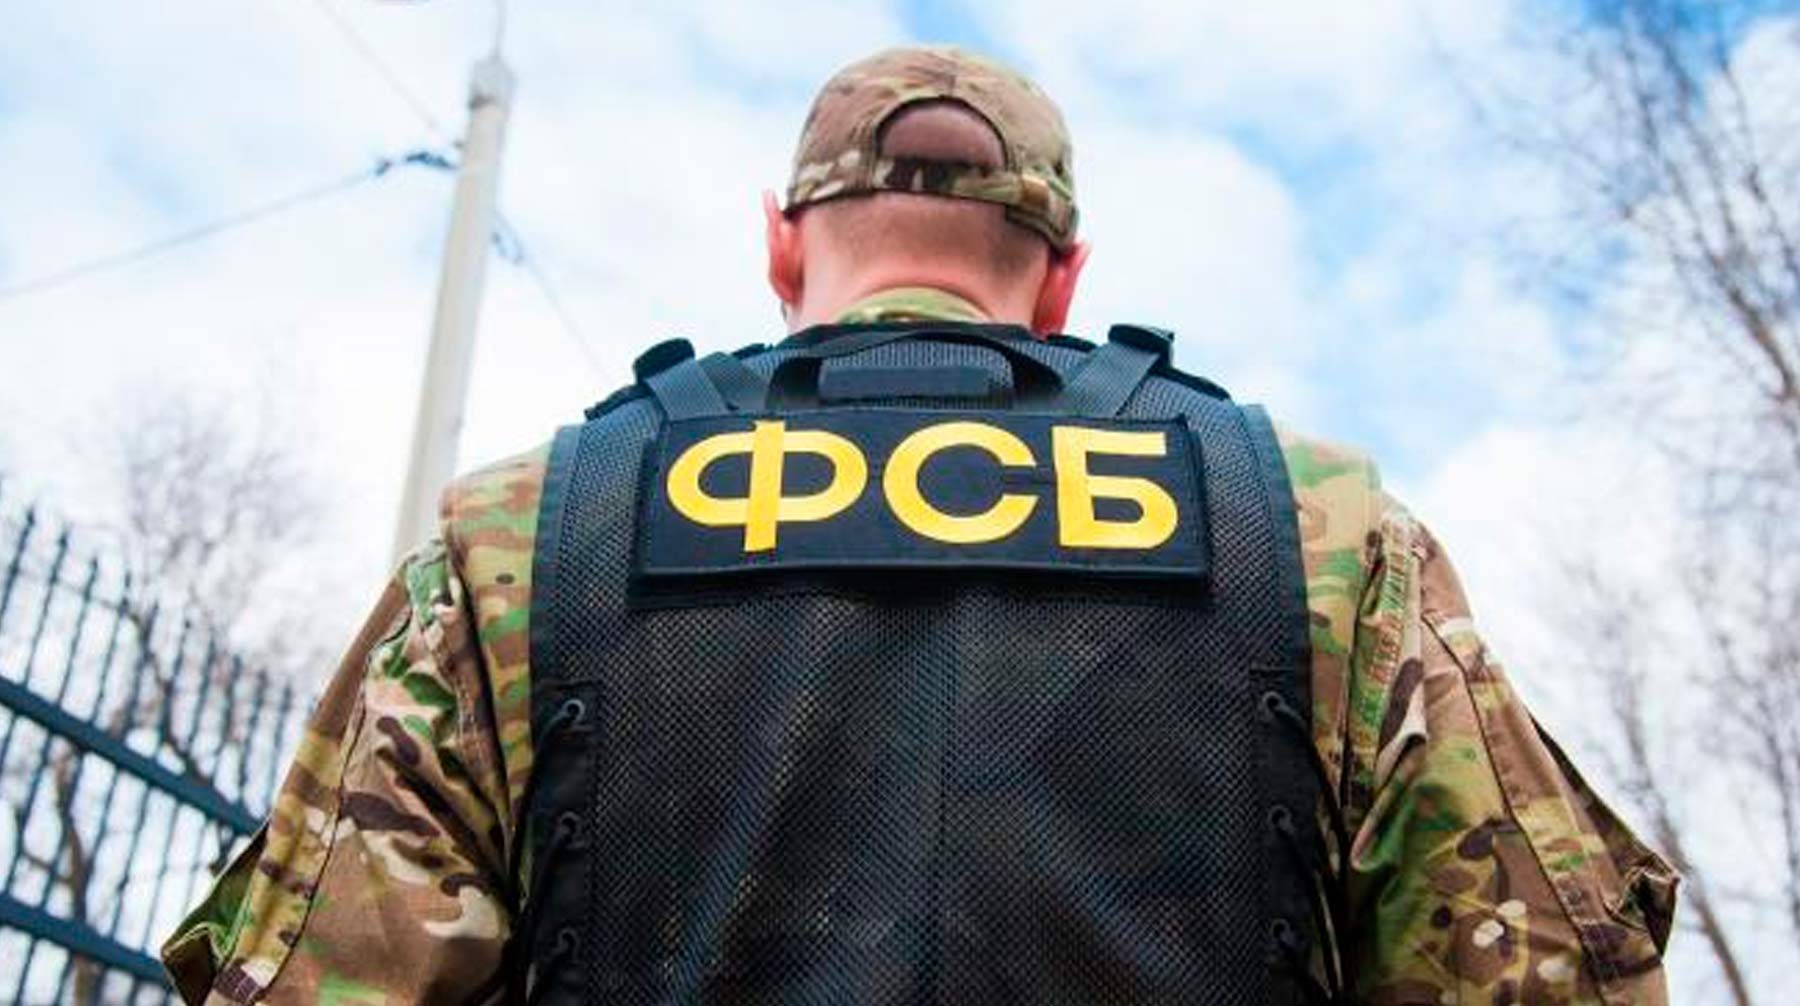 Dailystorm - ФСБ раскрыла в Мордовии ячейку экстремистской организации